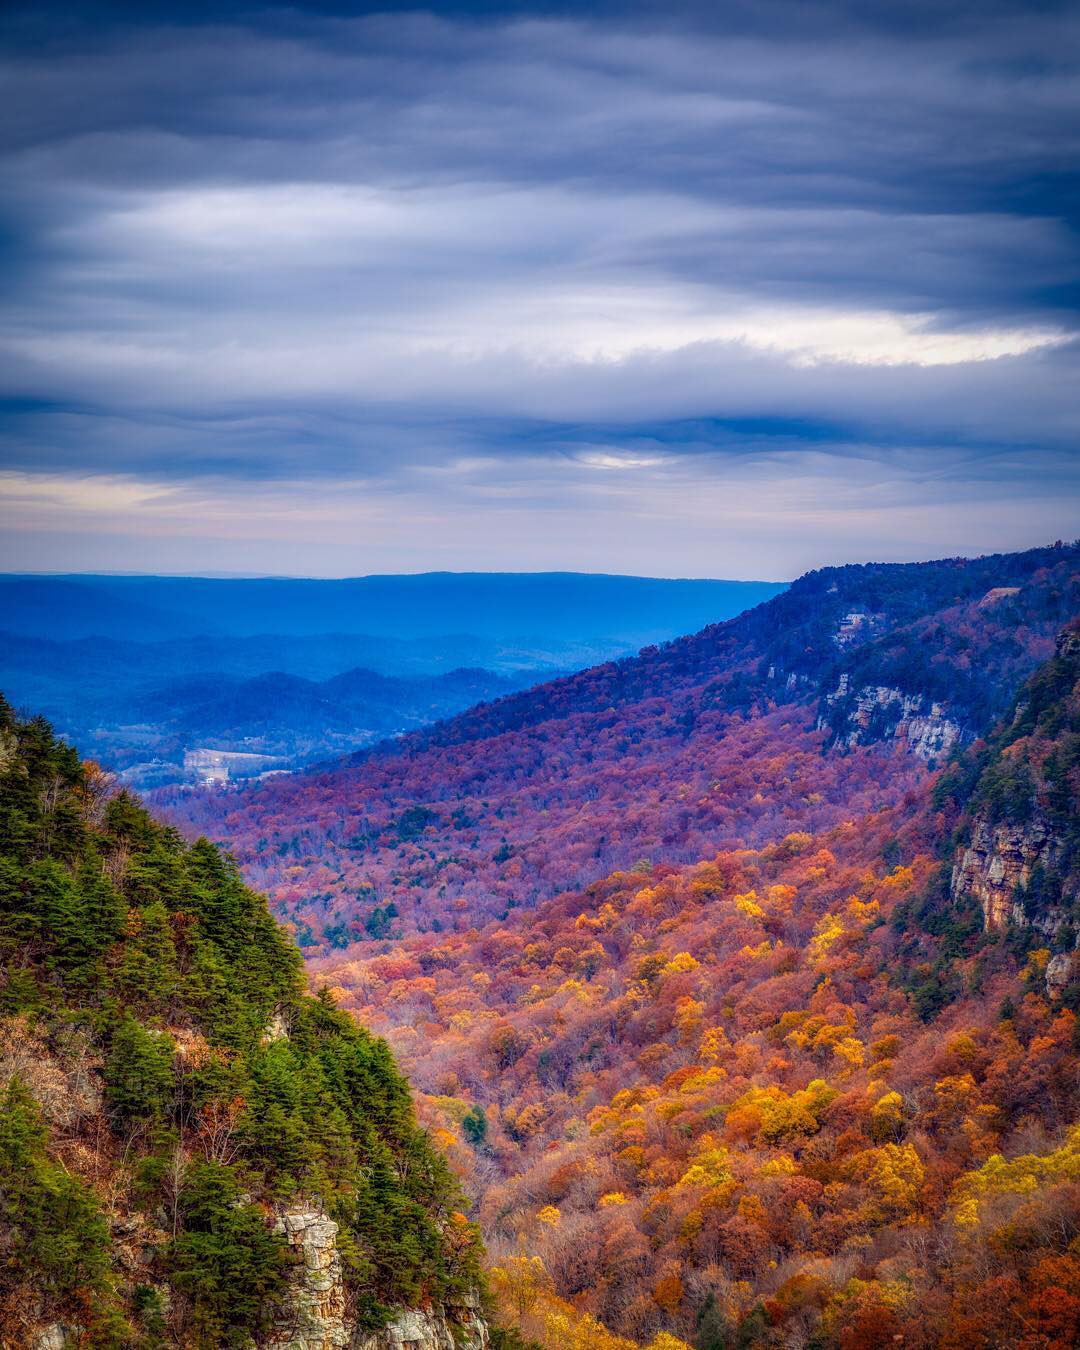 云地峡谷州立公园位于佐治亚州的Rising fwn。图片由@apharis